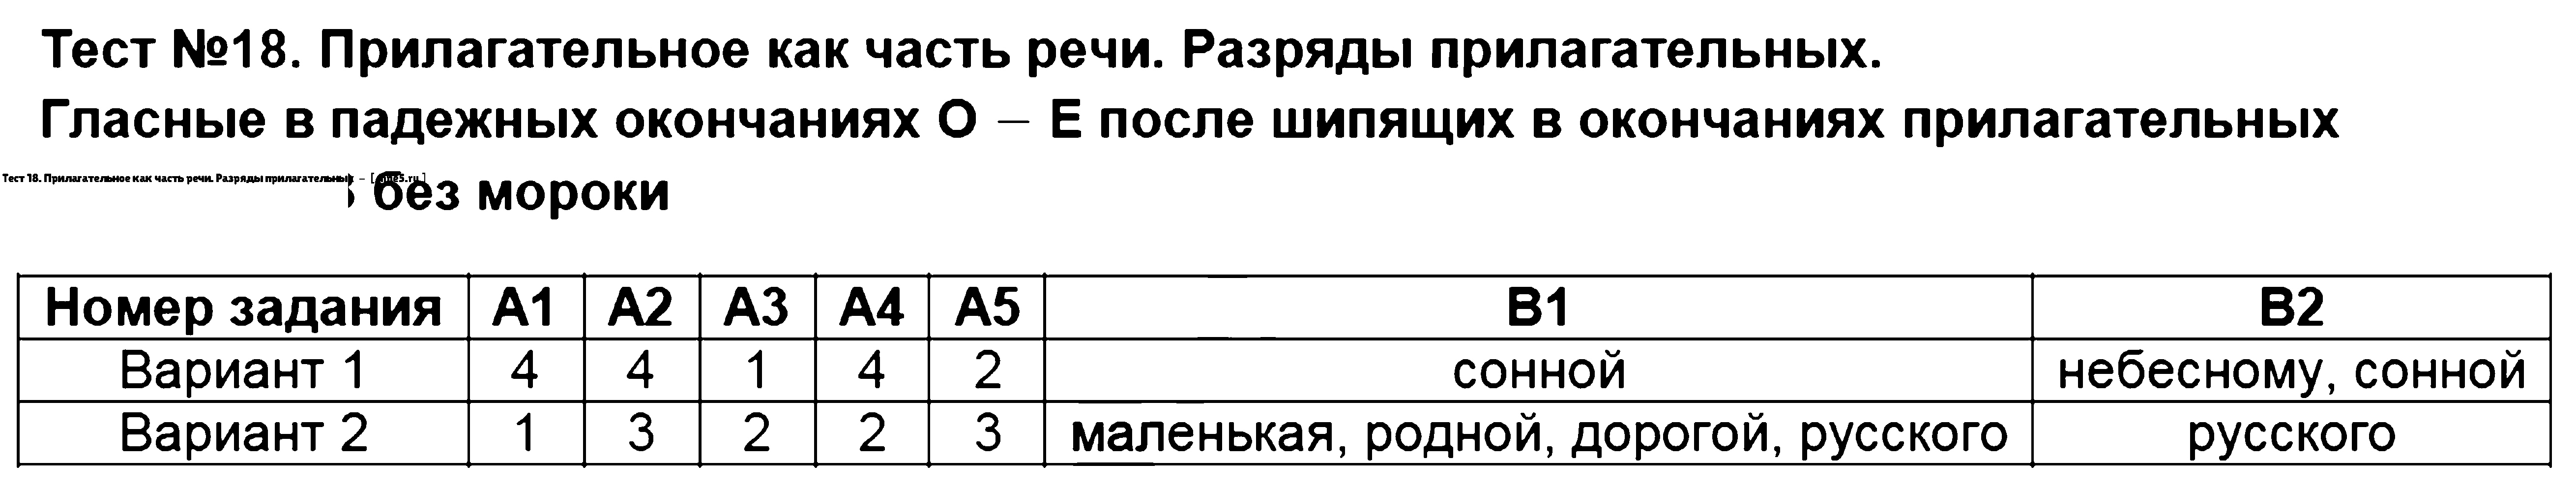 ГДЗ Русский язык 5 класс - Тест 18. Прилагательное как часть речи. Разряды прилагательных